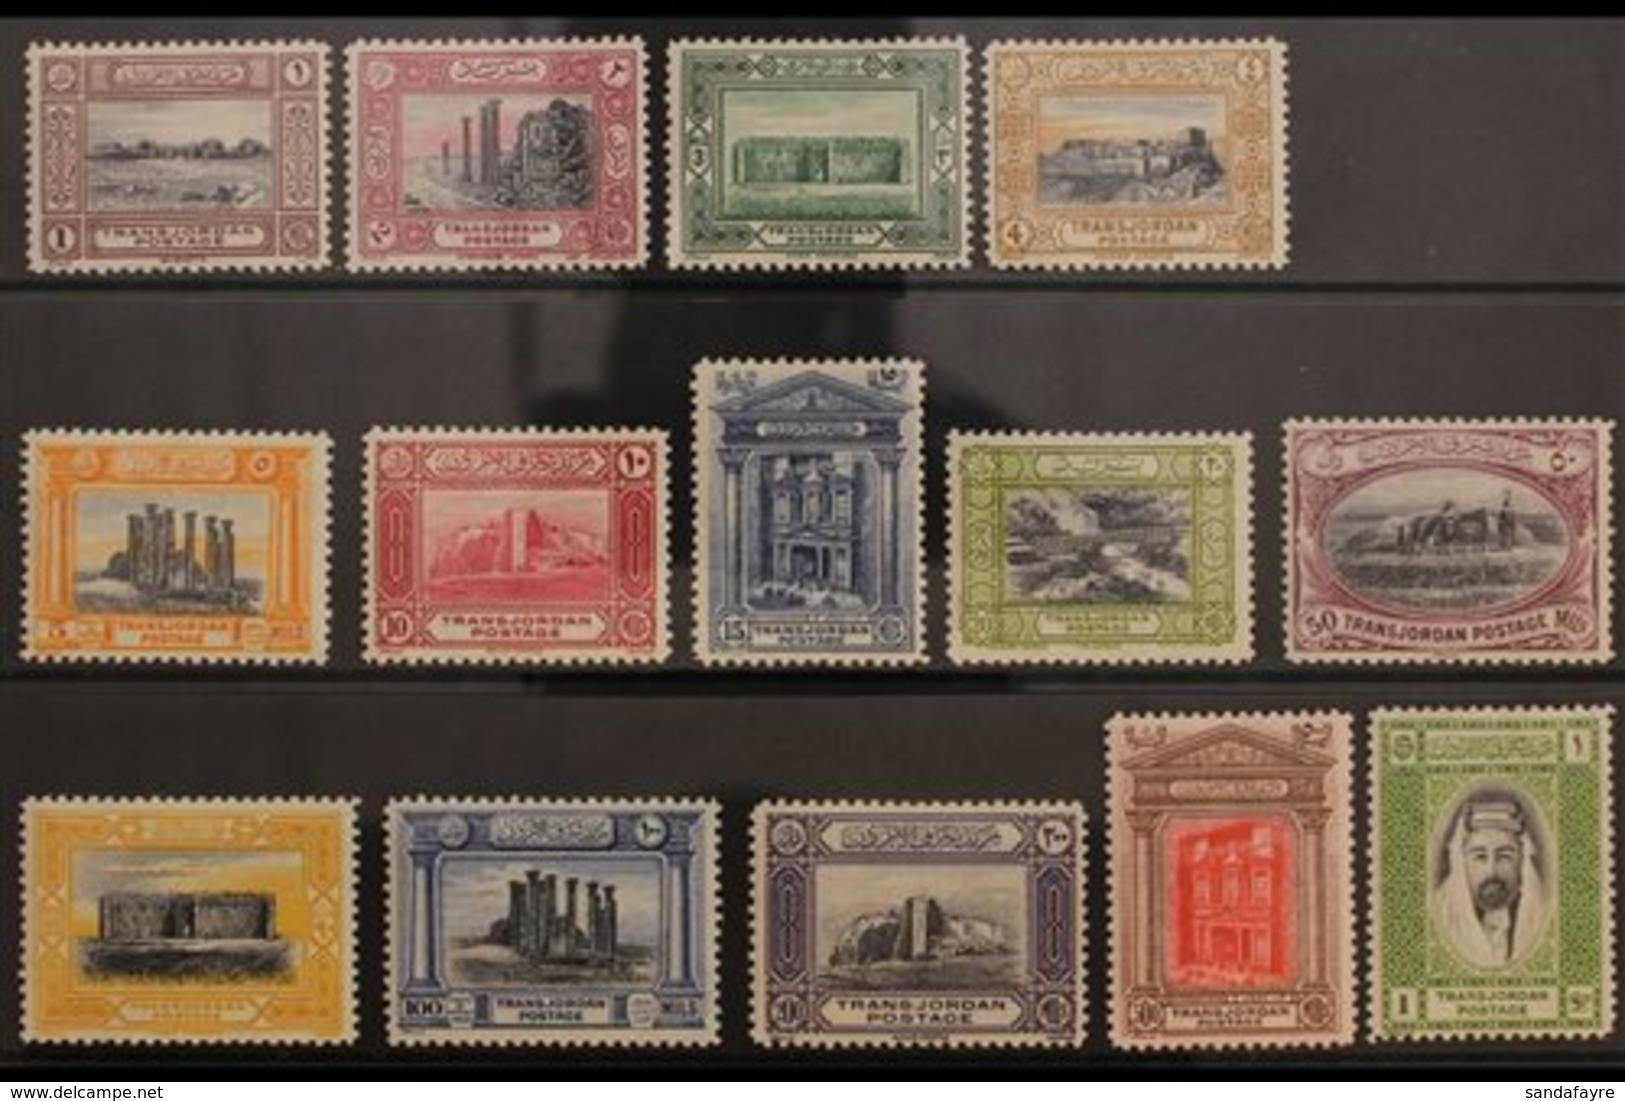 1933 Pictorial Complete Set, SG 208/221, Fine Mint (14 Stamps) For More Images, Please Visit Http://www.sandafayre.com/i - Jordanien